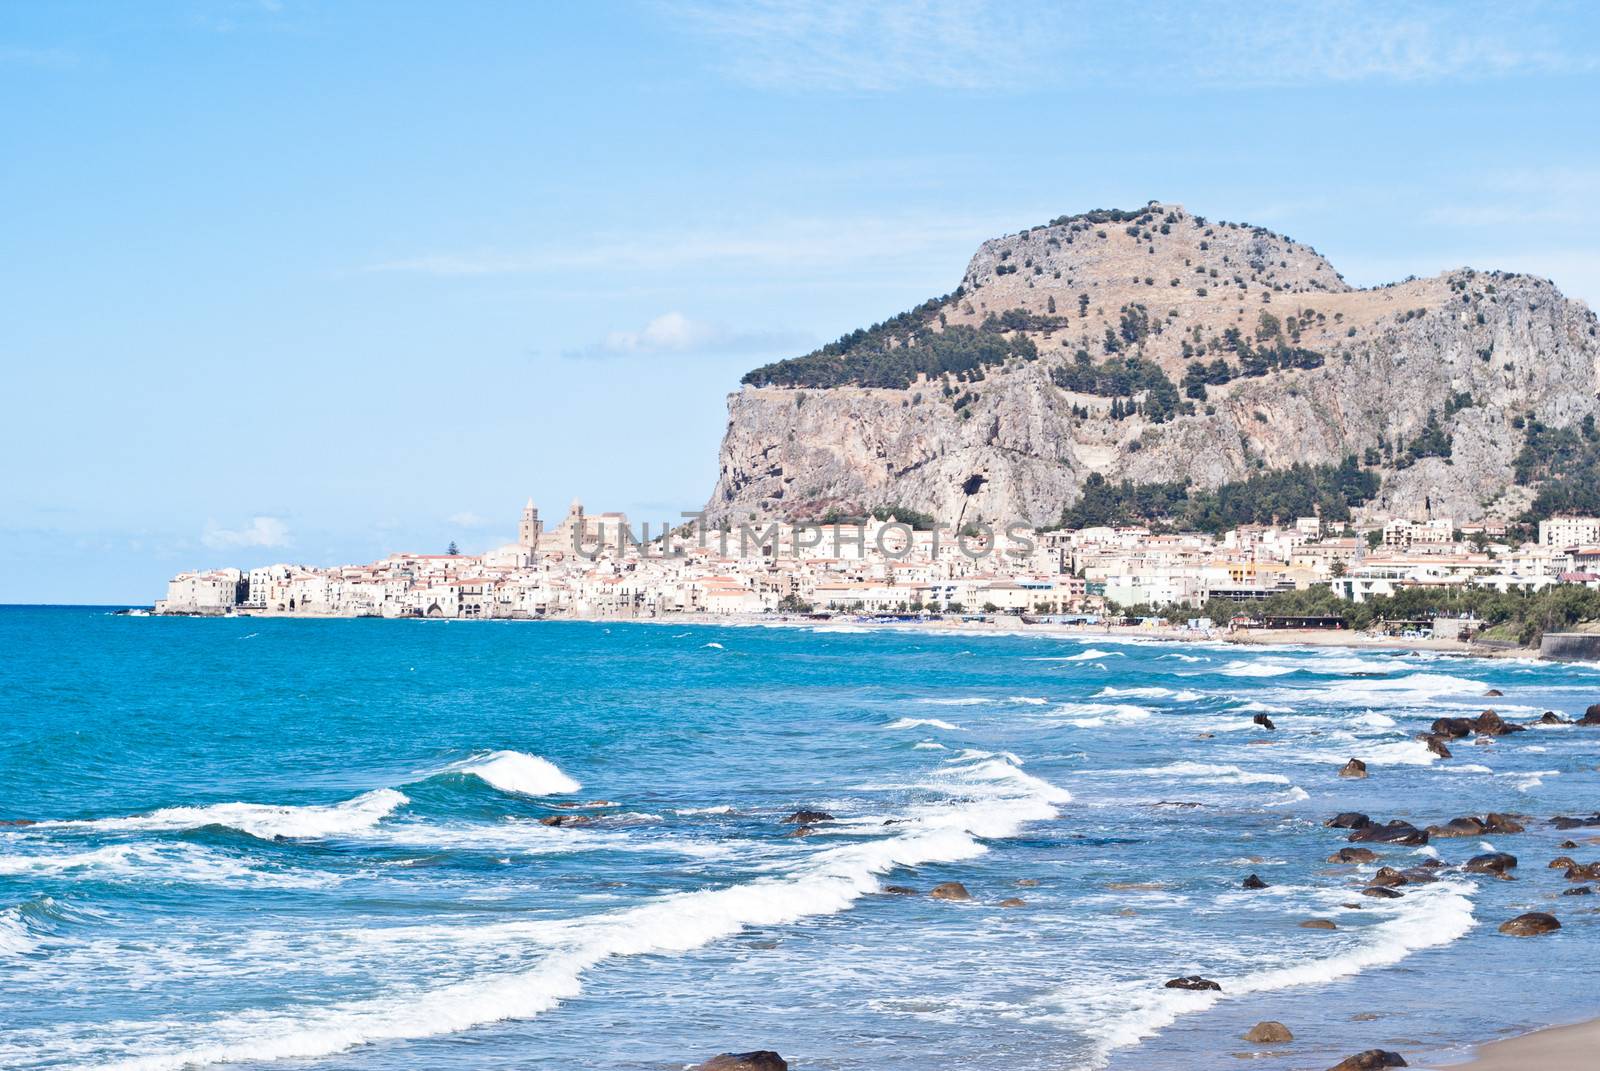 beach of cefalu, Sicily by gandolfocannatella